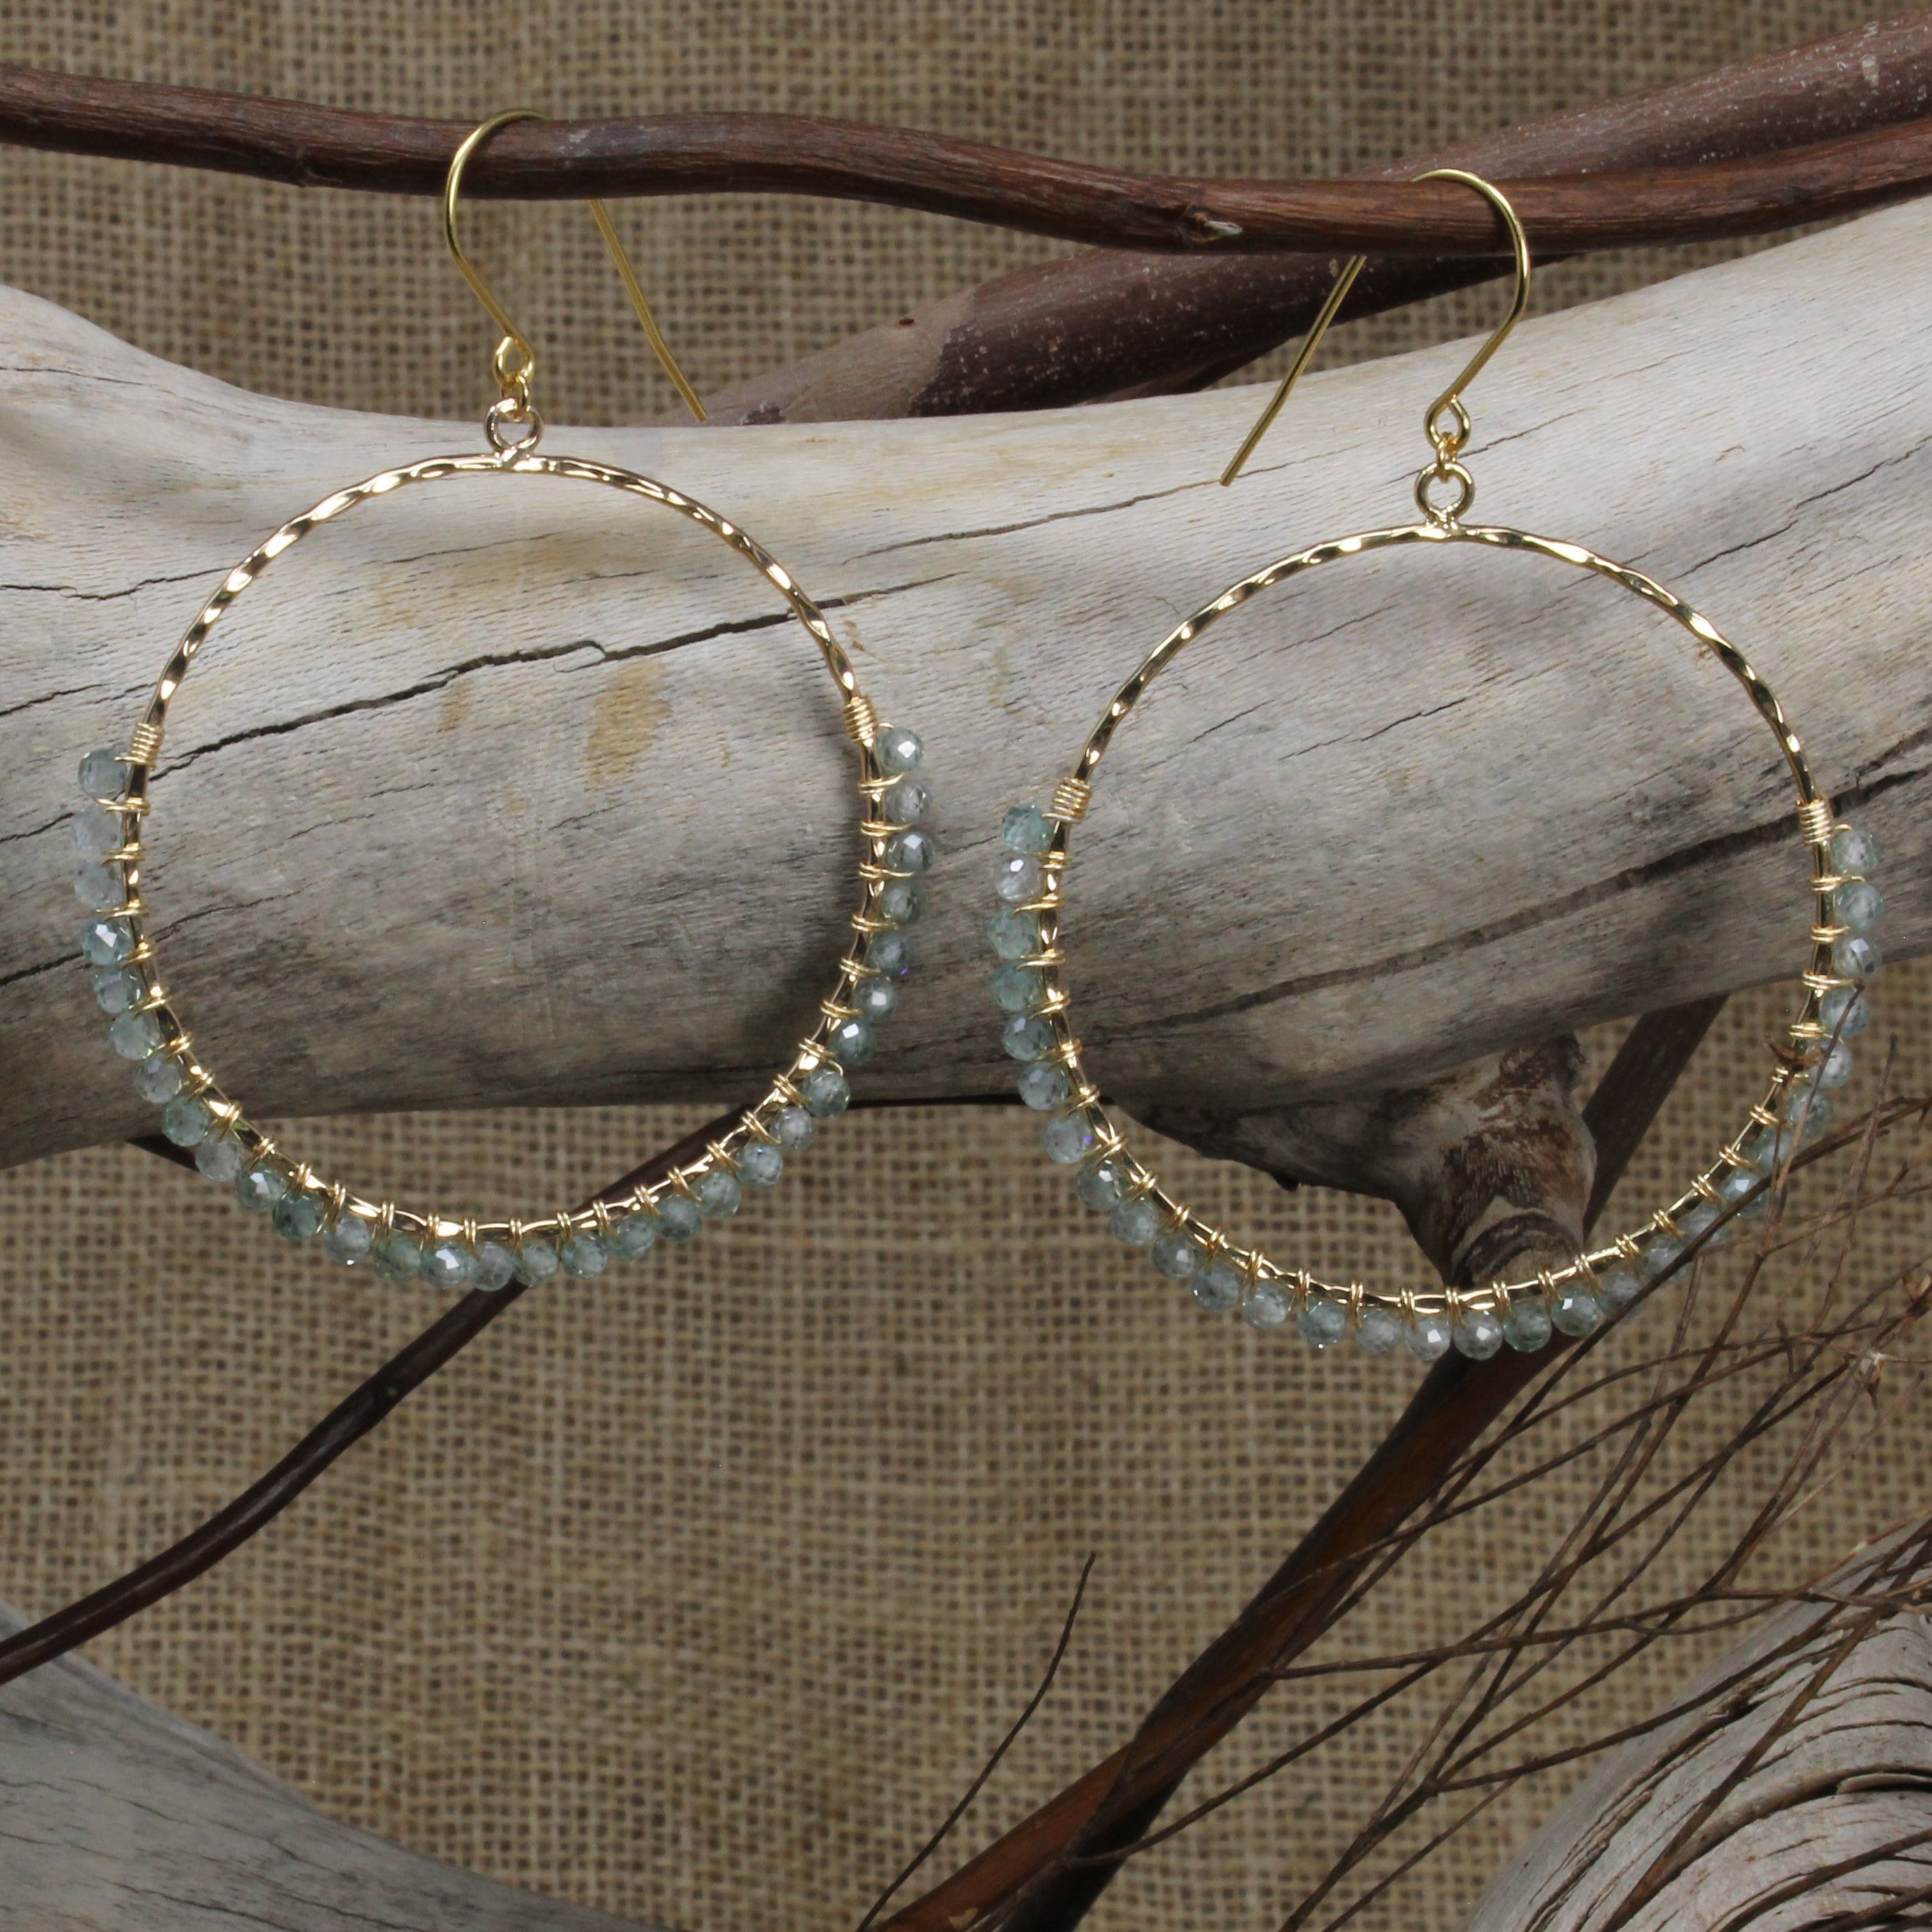 14 Gauge Round Stainless Steel Craft Wire - 10 ft: Wire Jewelry, Wire Wrap  Tutorials